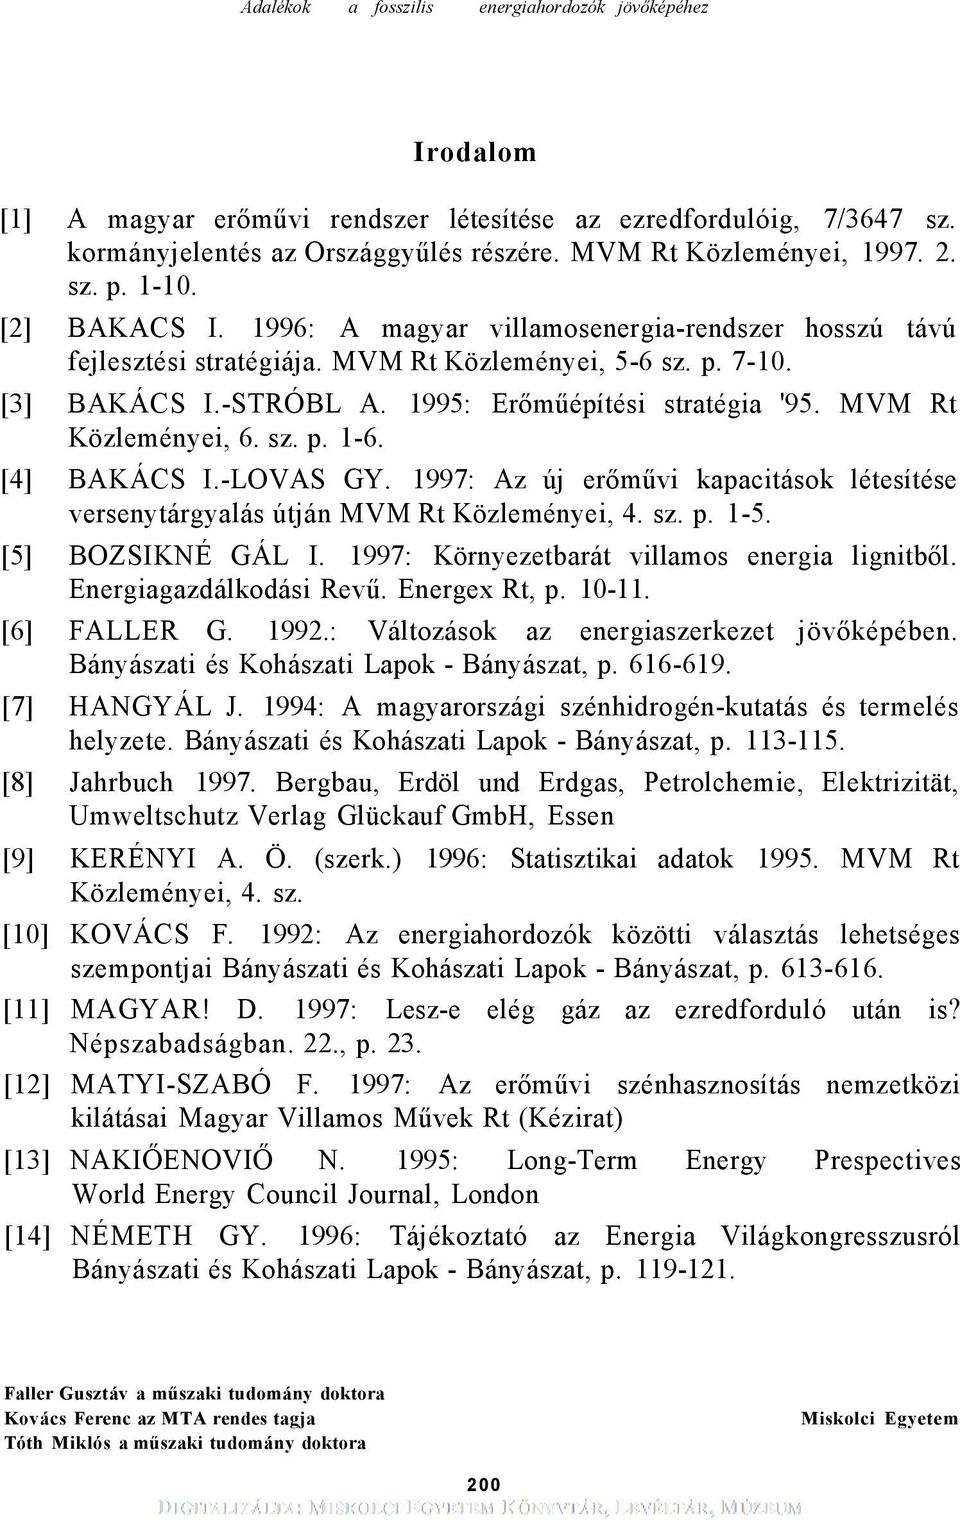 [4] BAKÁCS I.-LOVAS GY. 1997: Az új erőművi kapacitások létesítése versenytárgyalás útján MVM Rt Közleményei, 4. sz. p. 1-5. [5] BOZSIKNÉ GÁL I. 1997: Környezetbarát villamos energia lignitből.